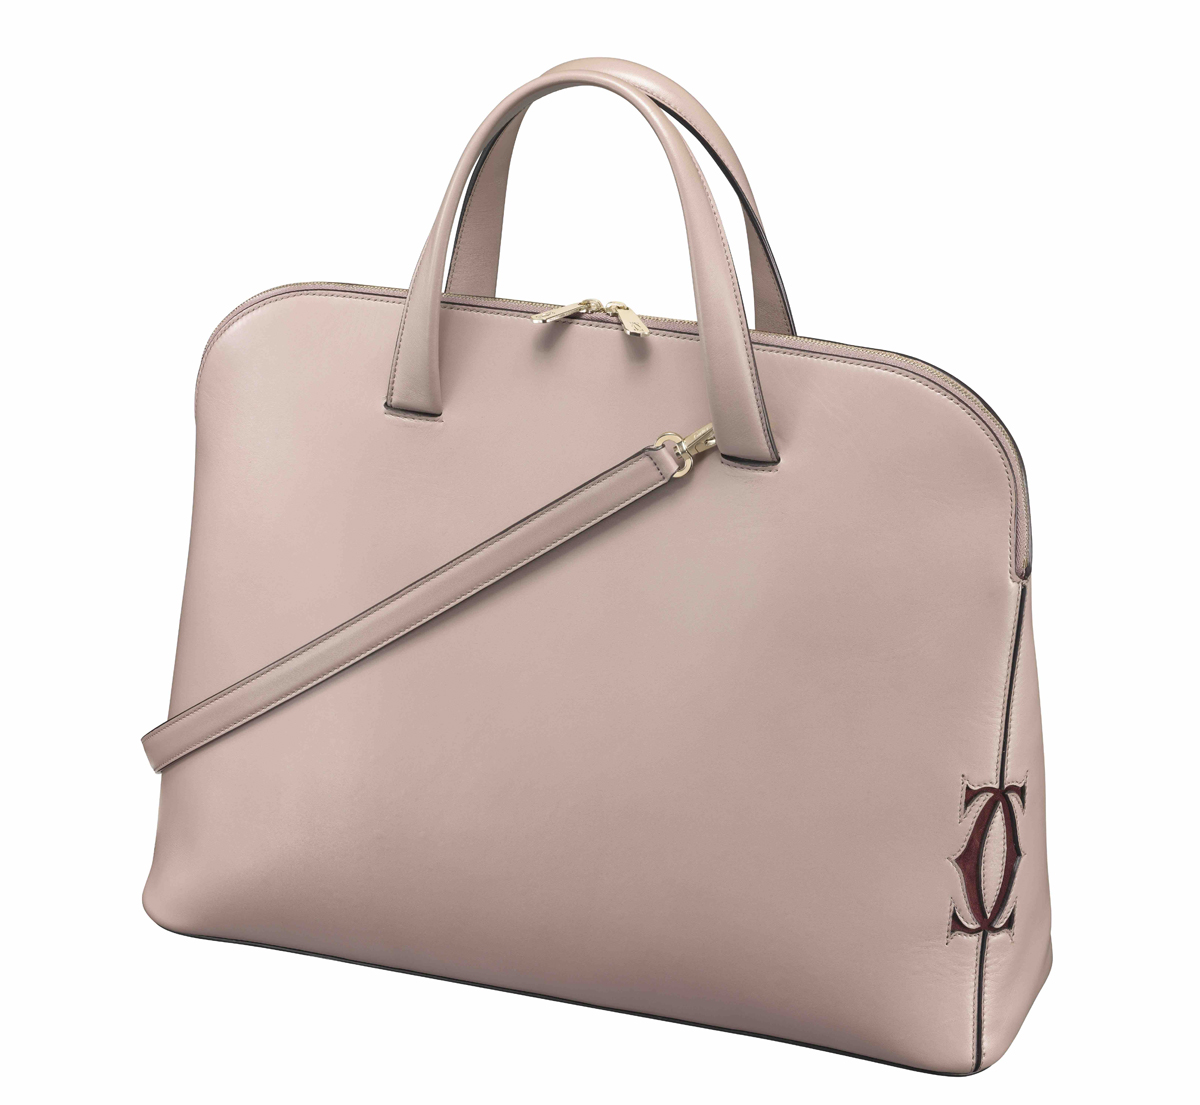 Medium model Must-C tote bag in grey quartz